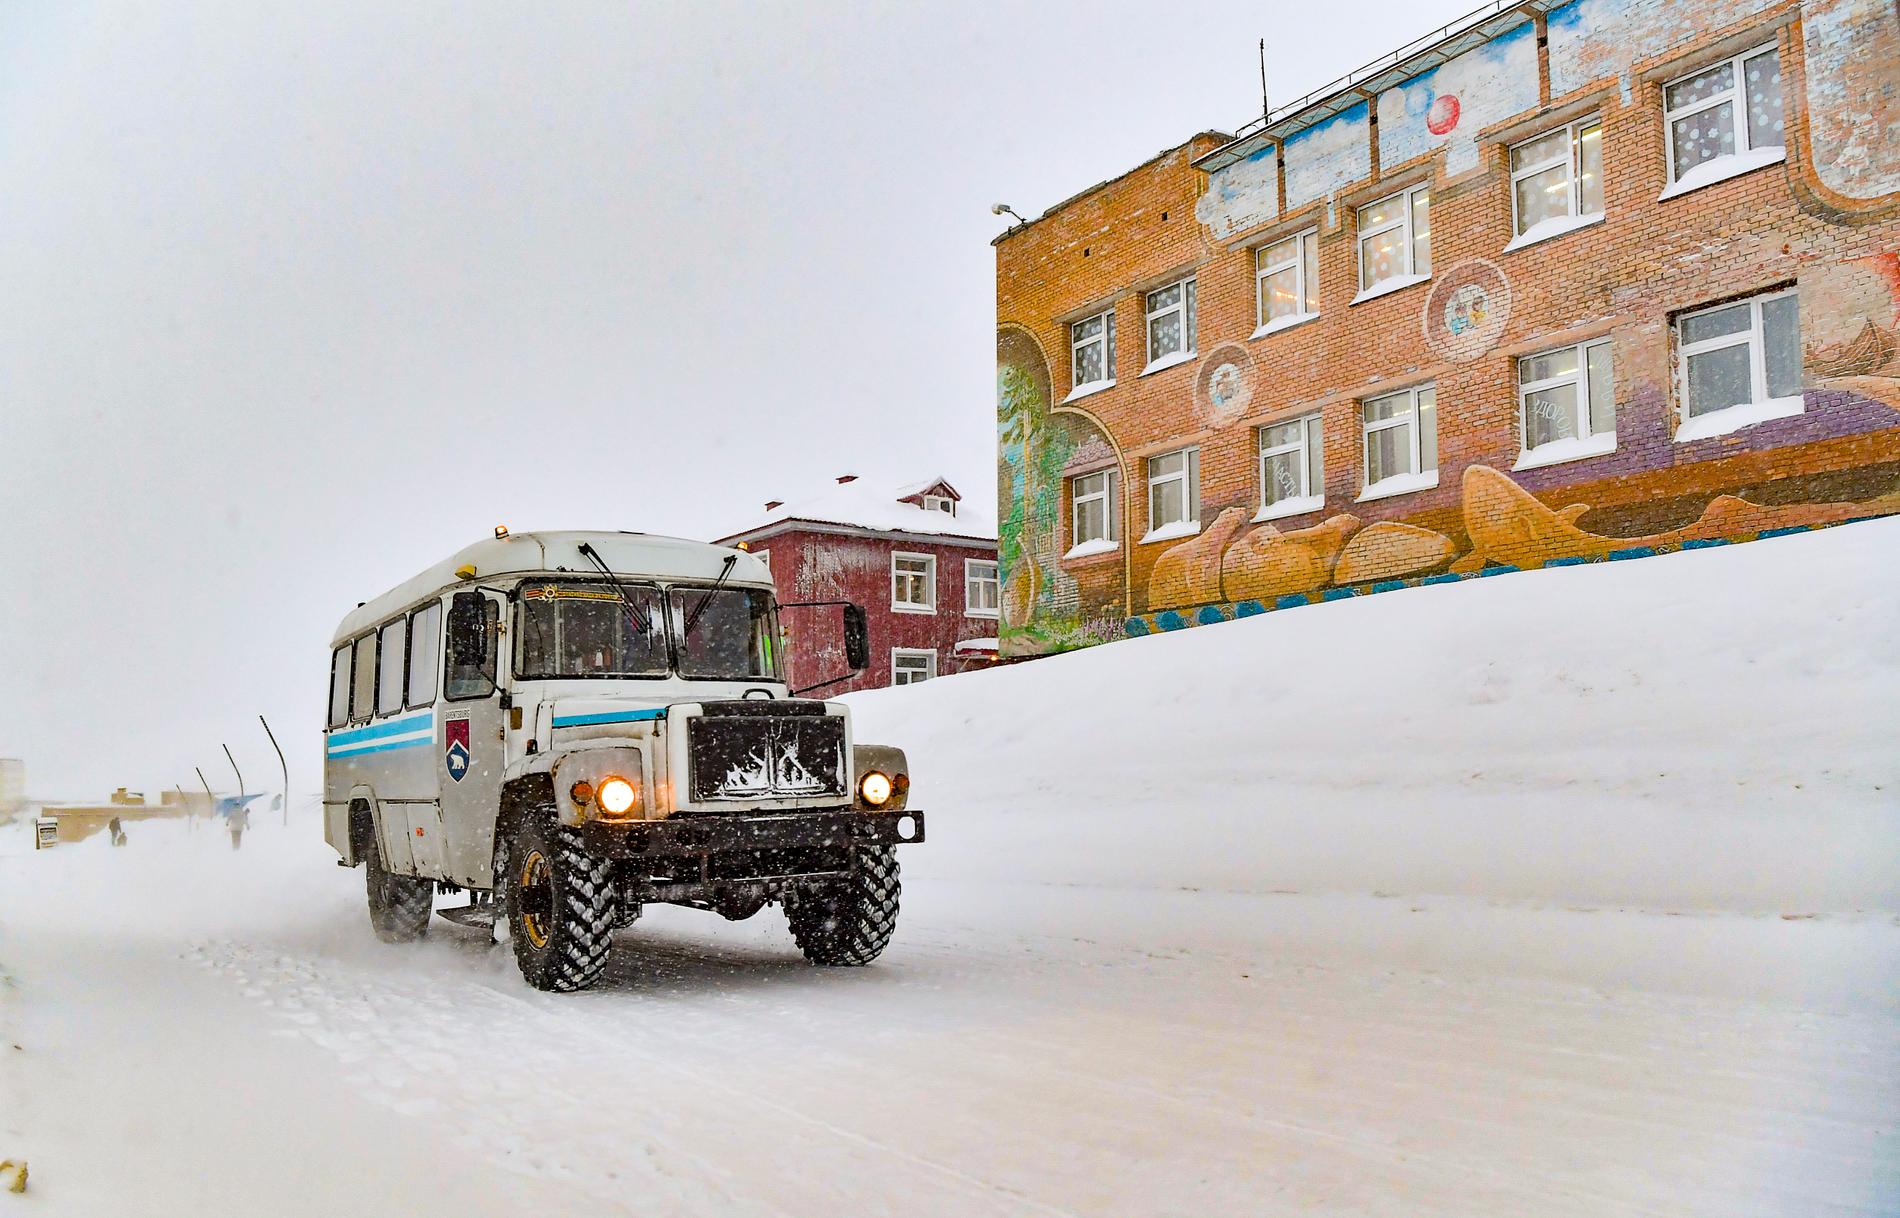 Av Barentsburgs 500 invånare är omkring 70 barn. Till höger i bild syns skolan.